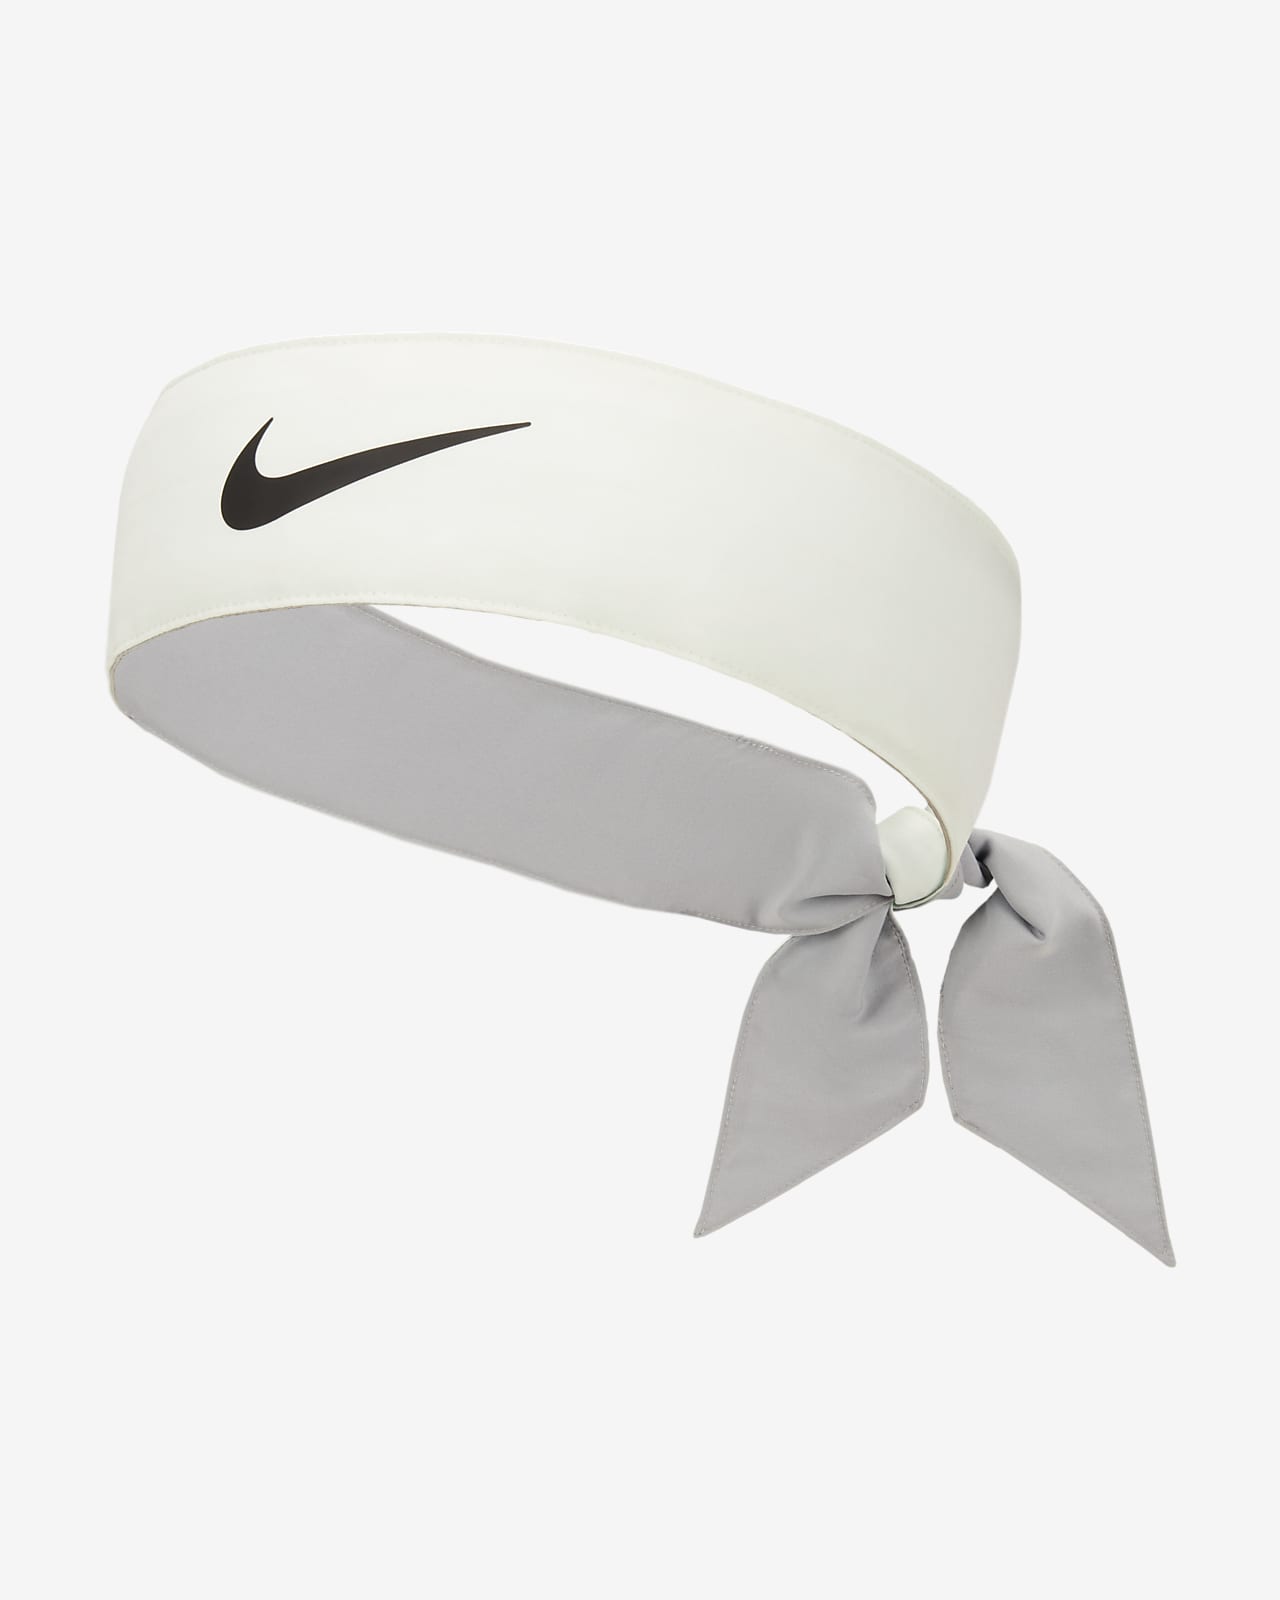 Bandeau tennis à nouer Nike Headband Premier coloris rouge et blanc